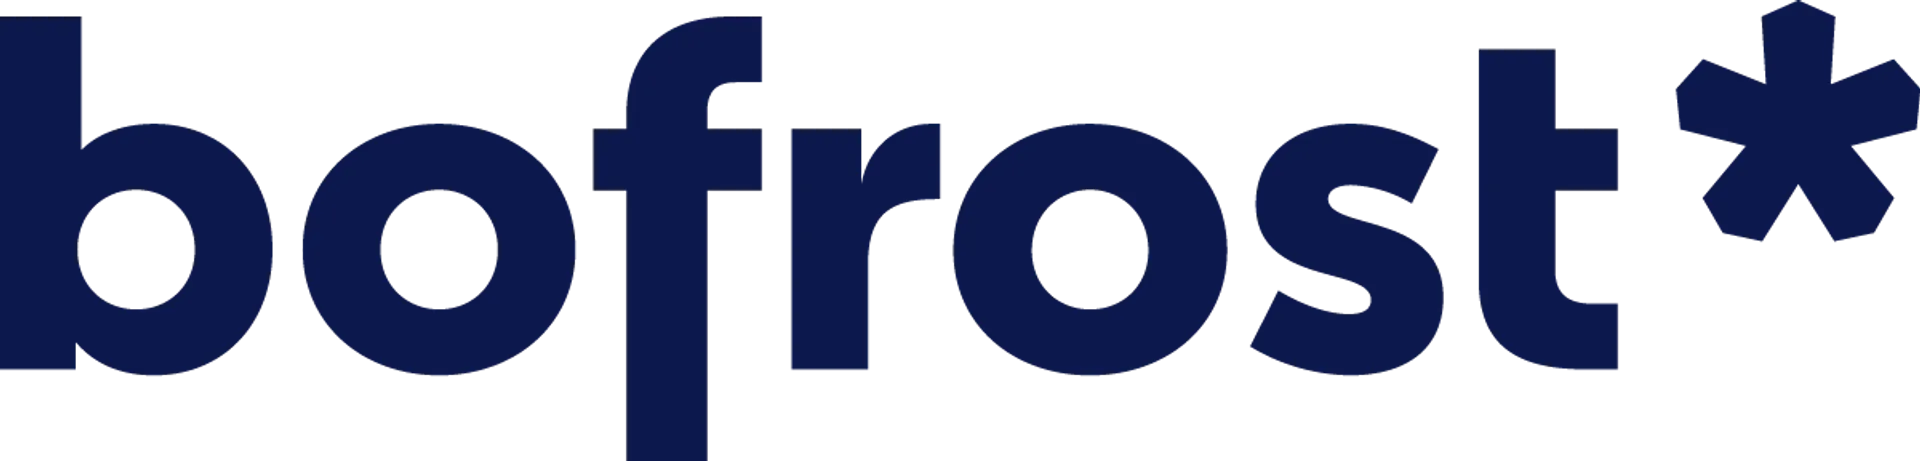 BOFROST logo